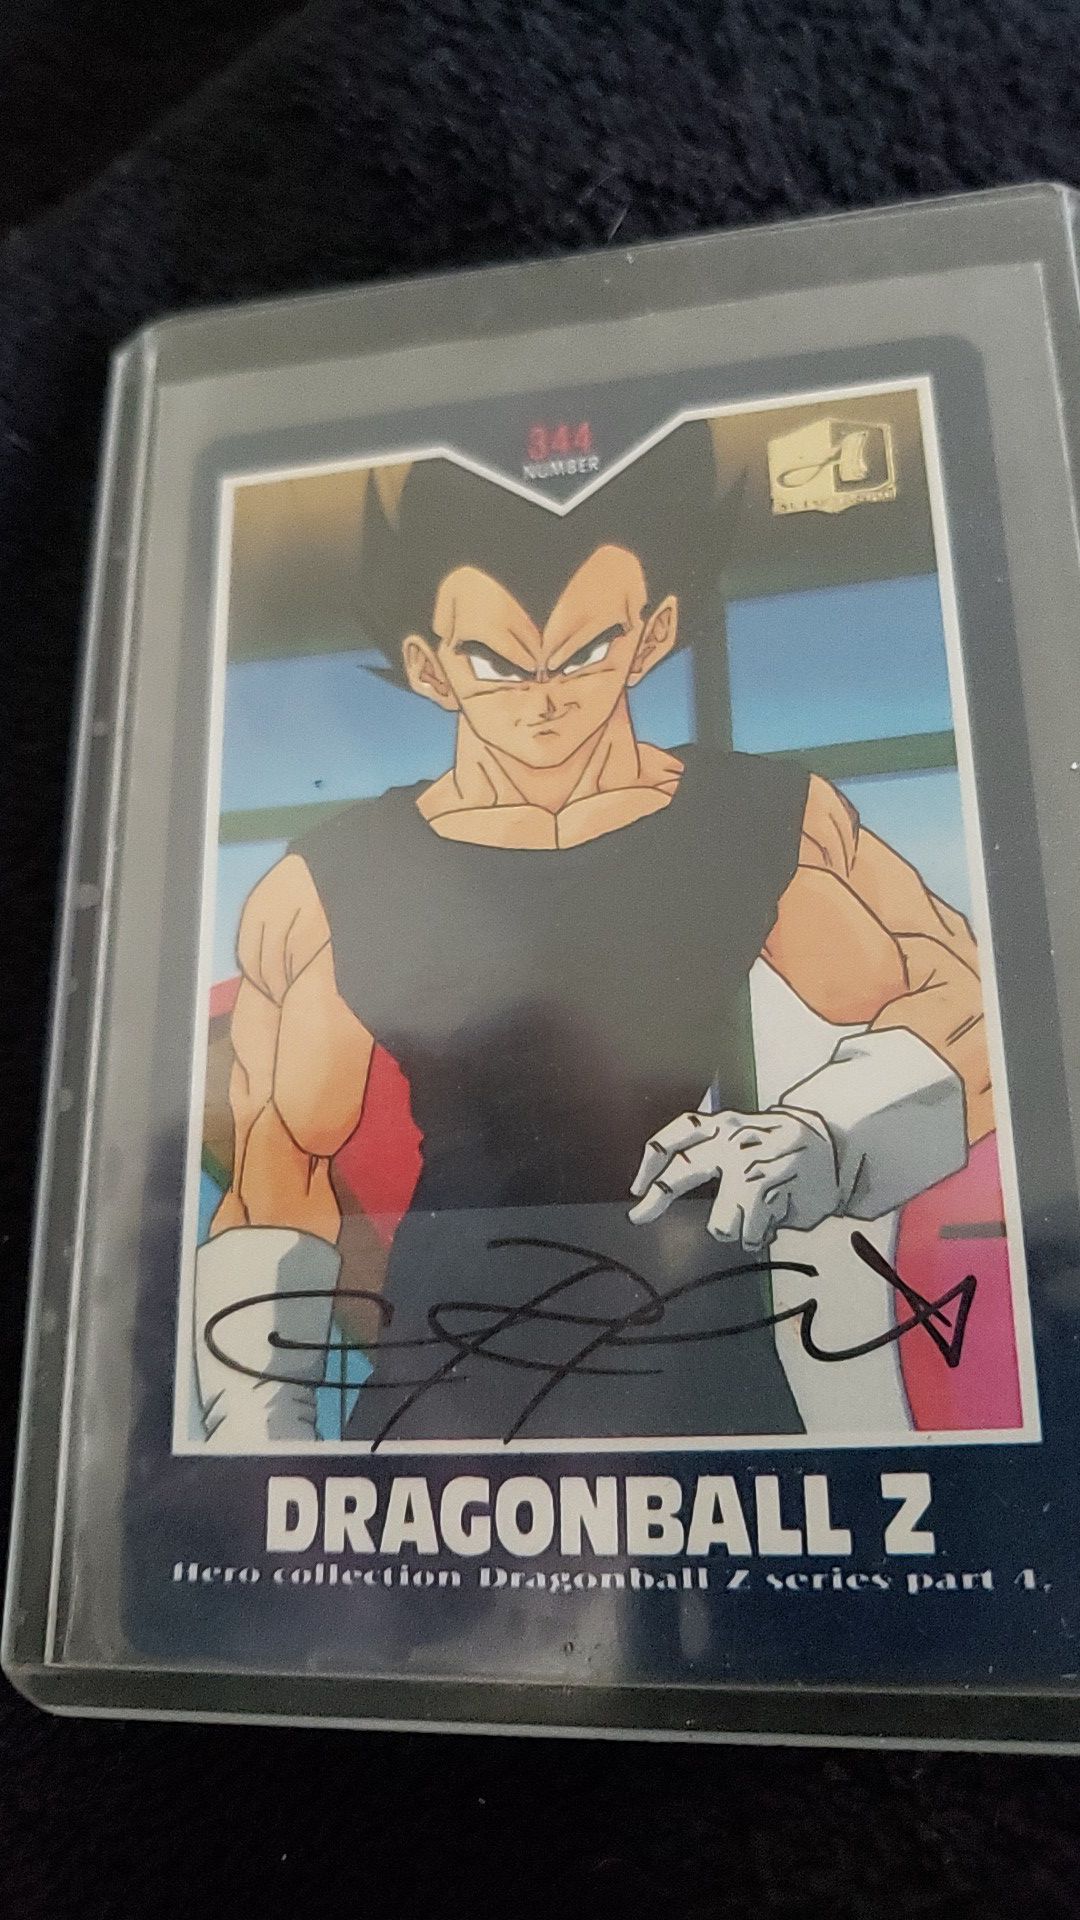 Dragonball Z Chris Sabat Autographed Card